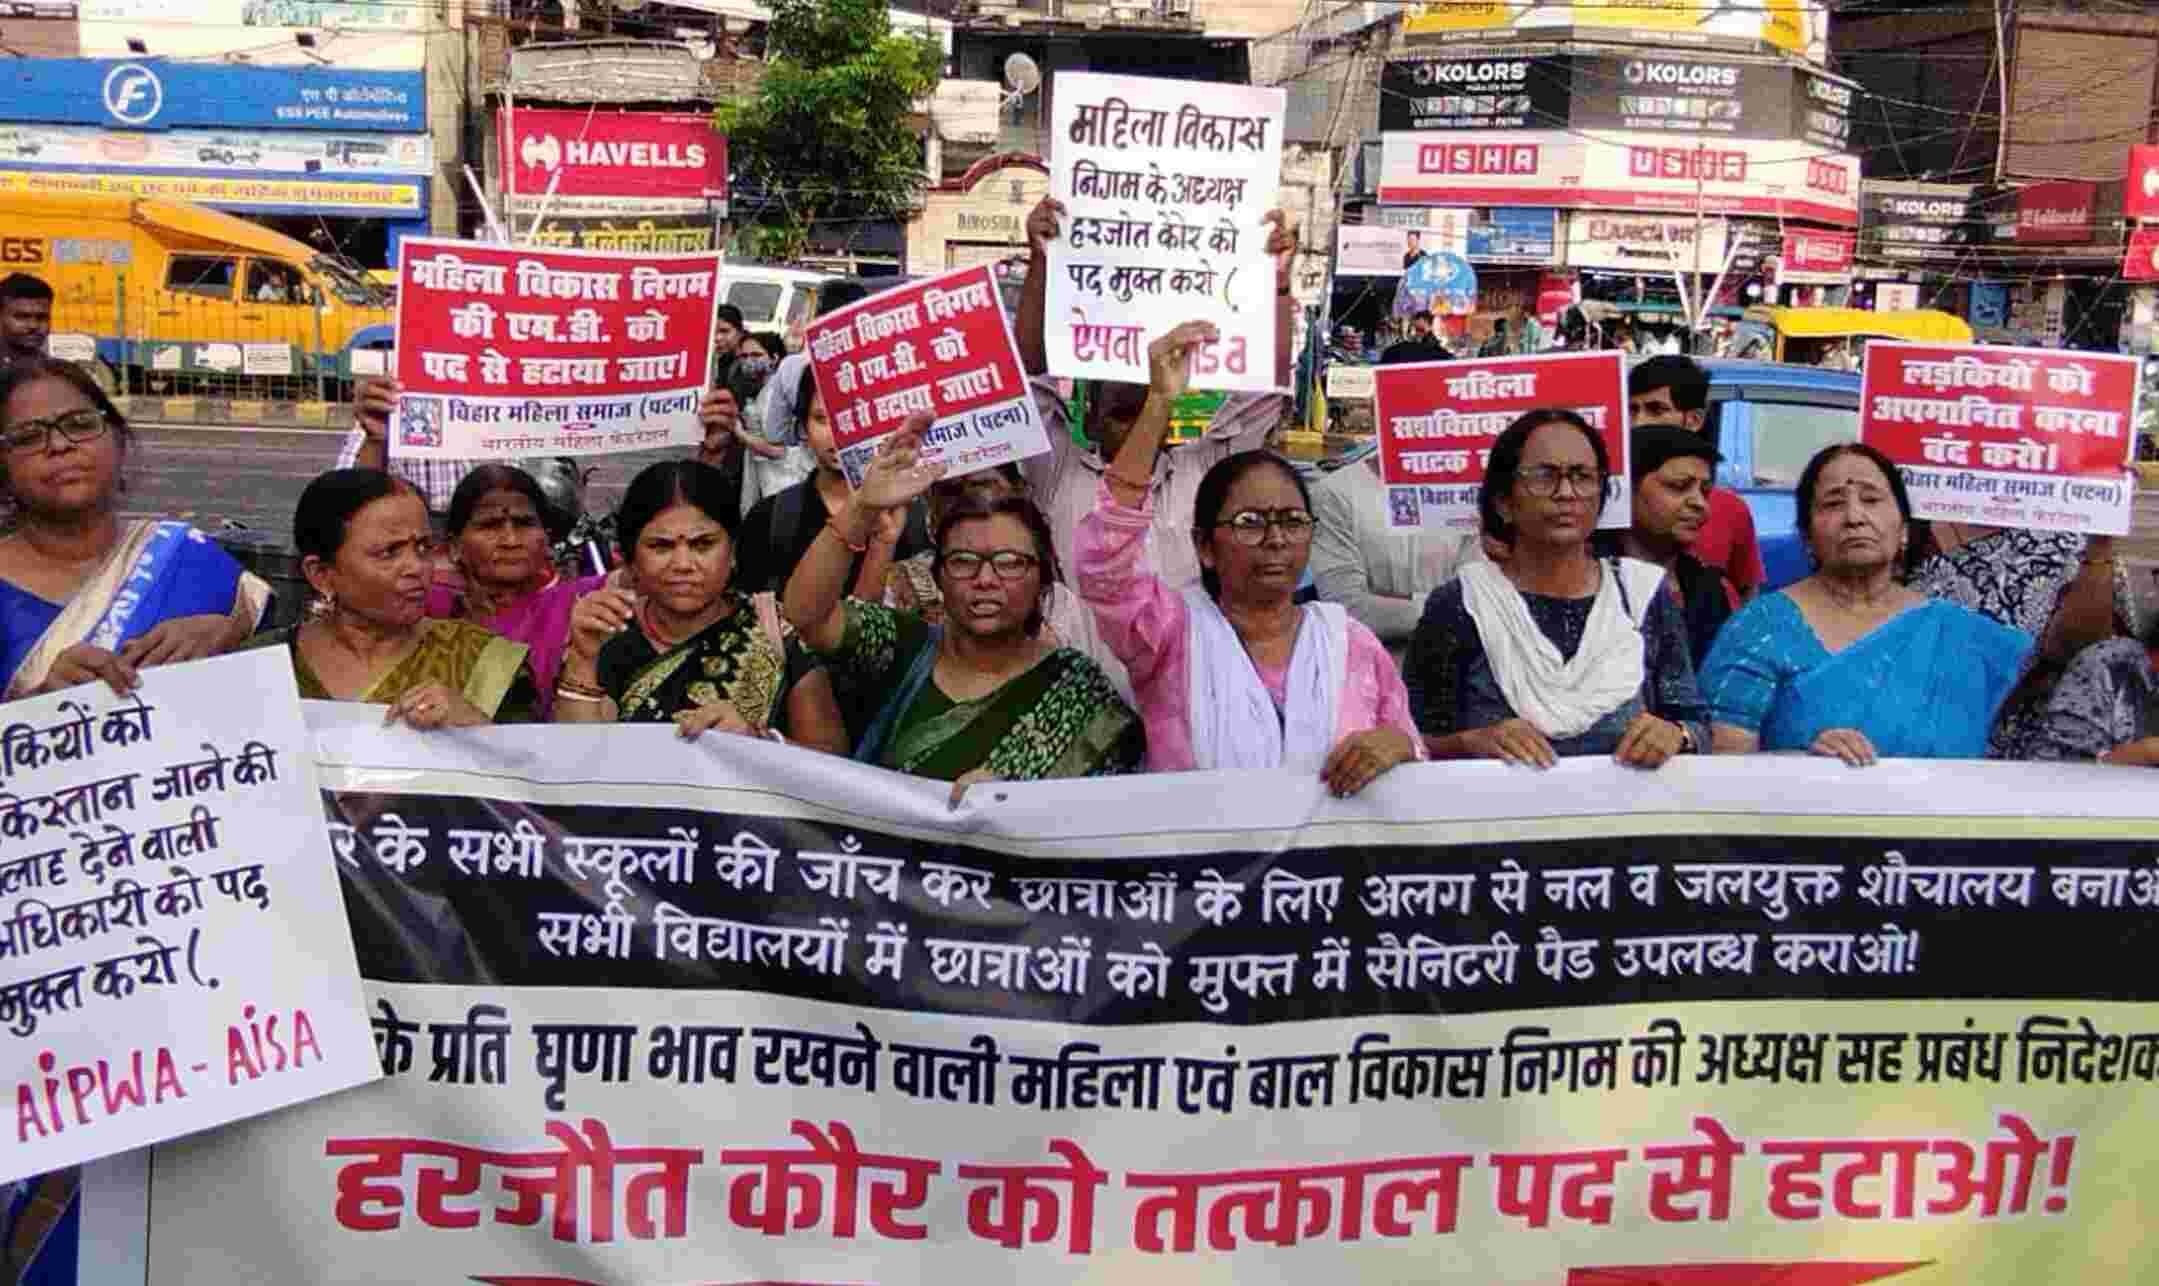 Patna News: सैनेट्री पैड की मांग पर उटपटांग बयान देने वाली IAS के खिलाफ पटना में महिला संगठनों का जोरदार प्रदर्शन